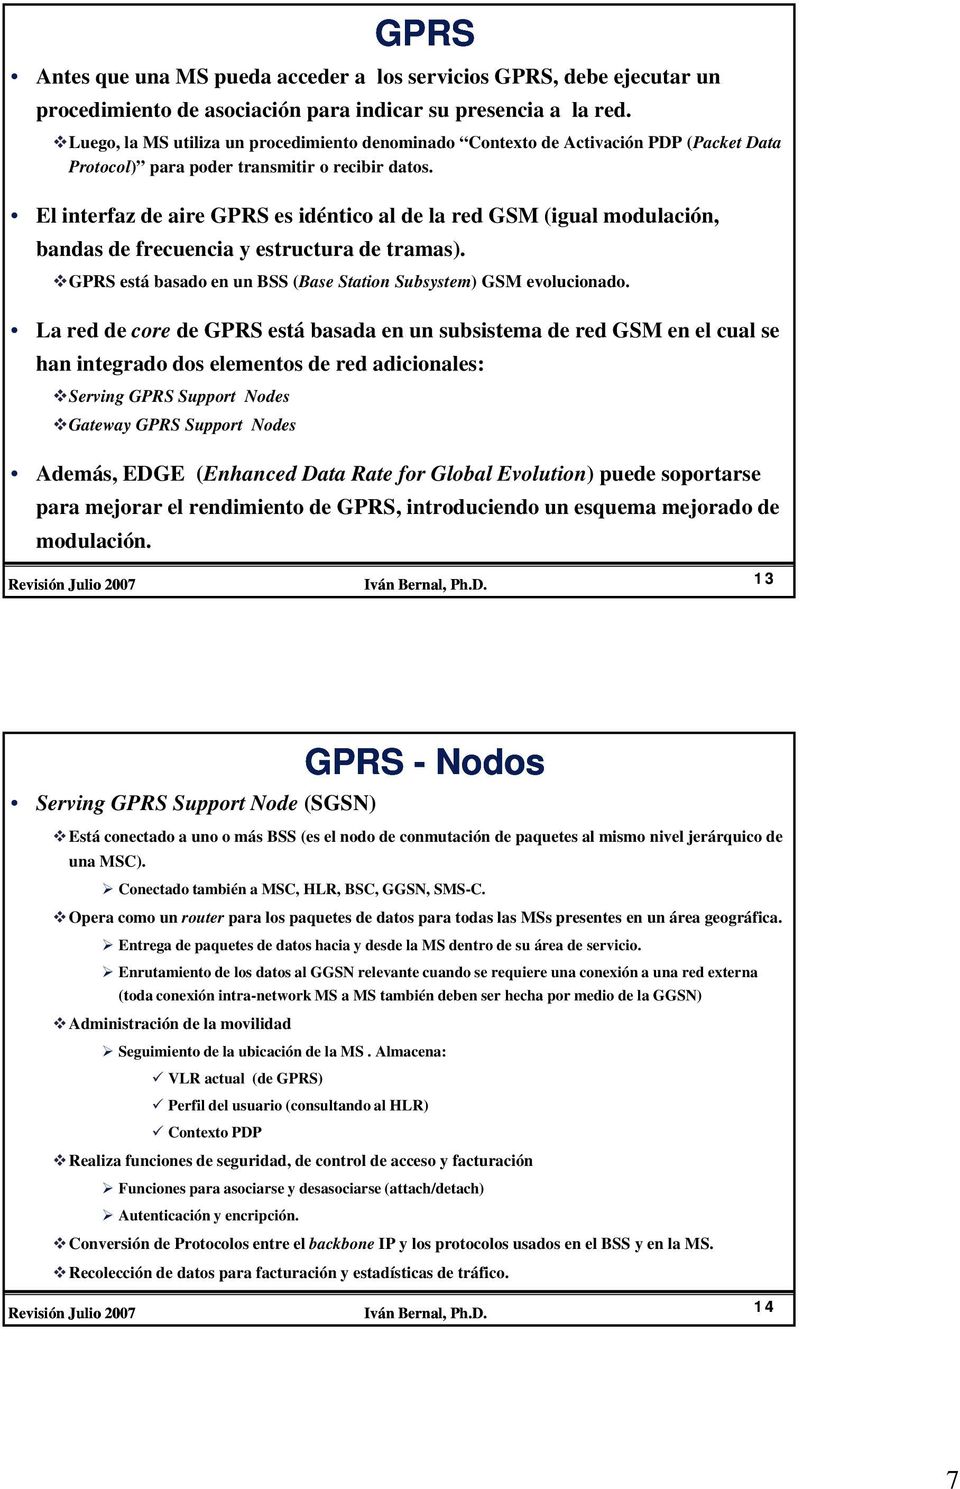 El interfaz de aire GPRS es idéntico al de la red GSM (igual modulación, bandas de frecuencia y estructura de tramas). GPRS está basado en un BSS (Base Station Subsystem) GSM evolucionado.